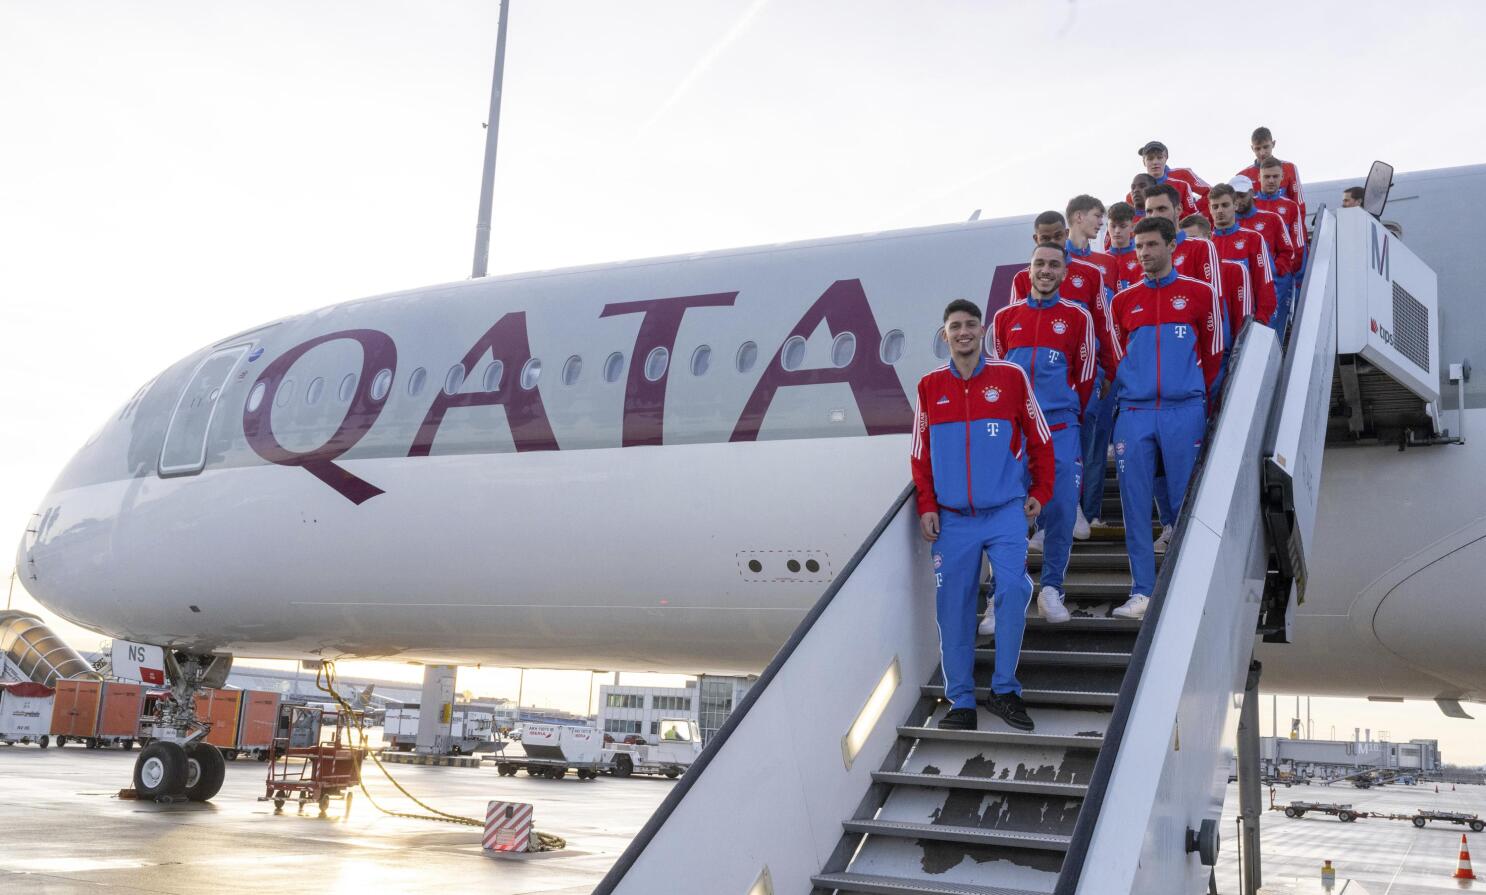 Bayern Munich back in Qatar amid sponsorship uncertainty